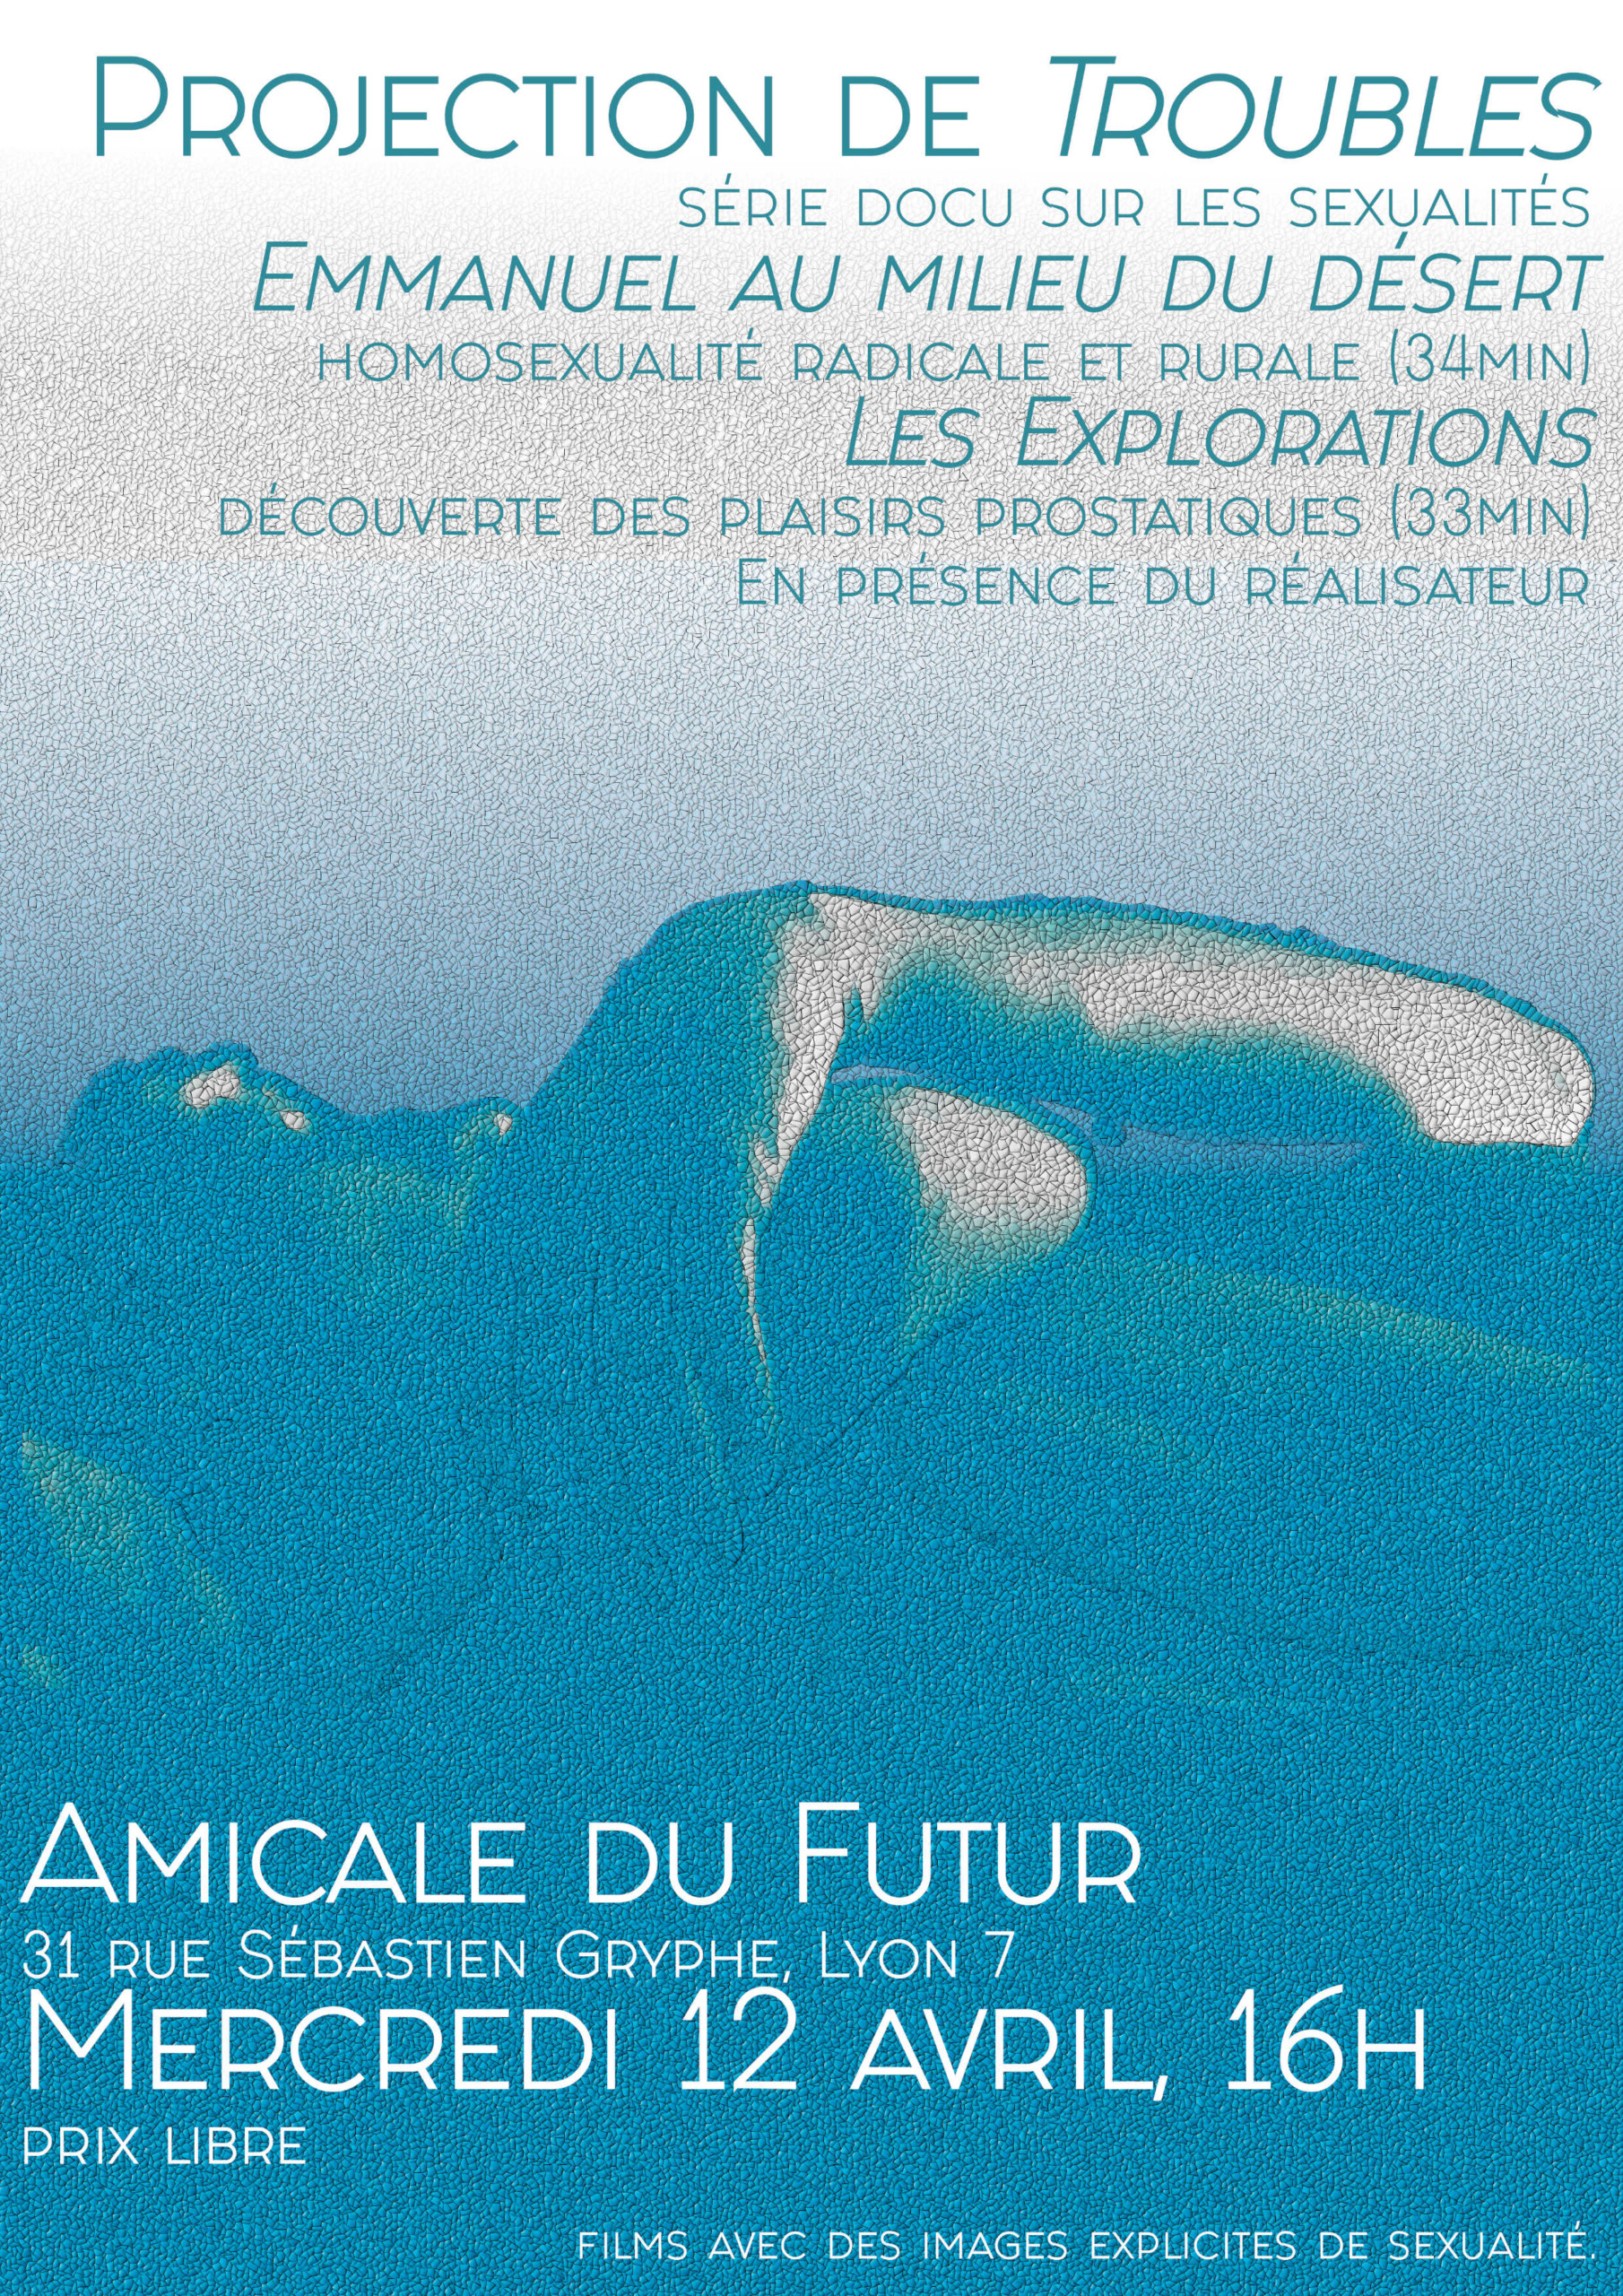 L'Amicale du Futur, 31 rue Sébastien Gryphe Lyon 7e Mer 12/04 – 16h, Projection de « Troubles »